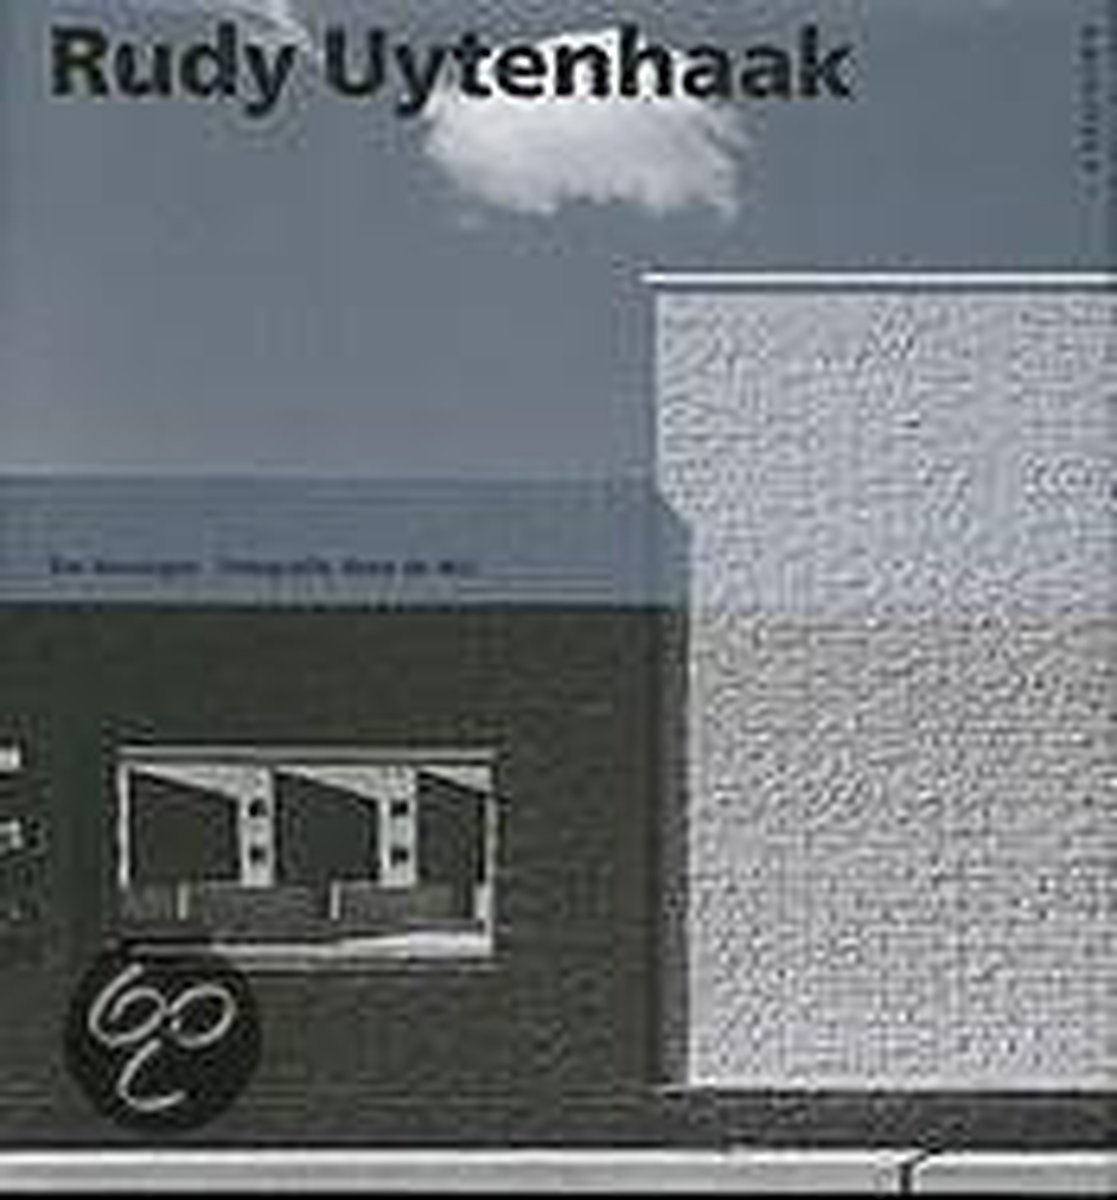 Rudy Uytenhaak